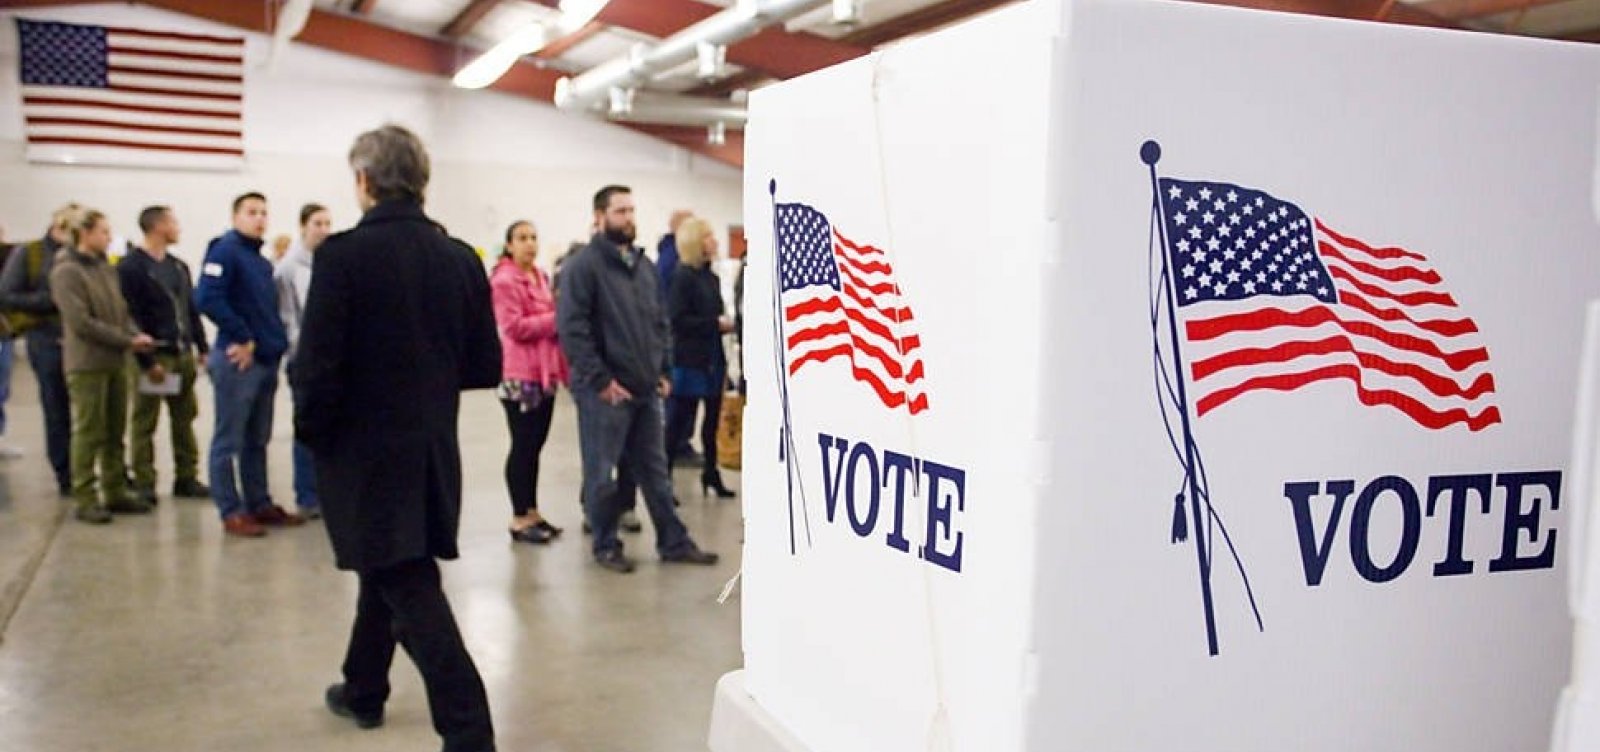 Republicanos dizem que houve fraudes em eleições na Flórida e no Arizona